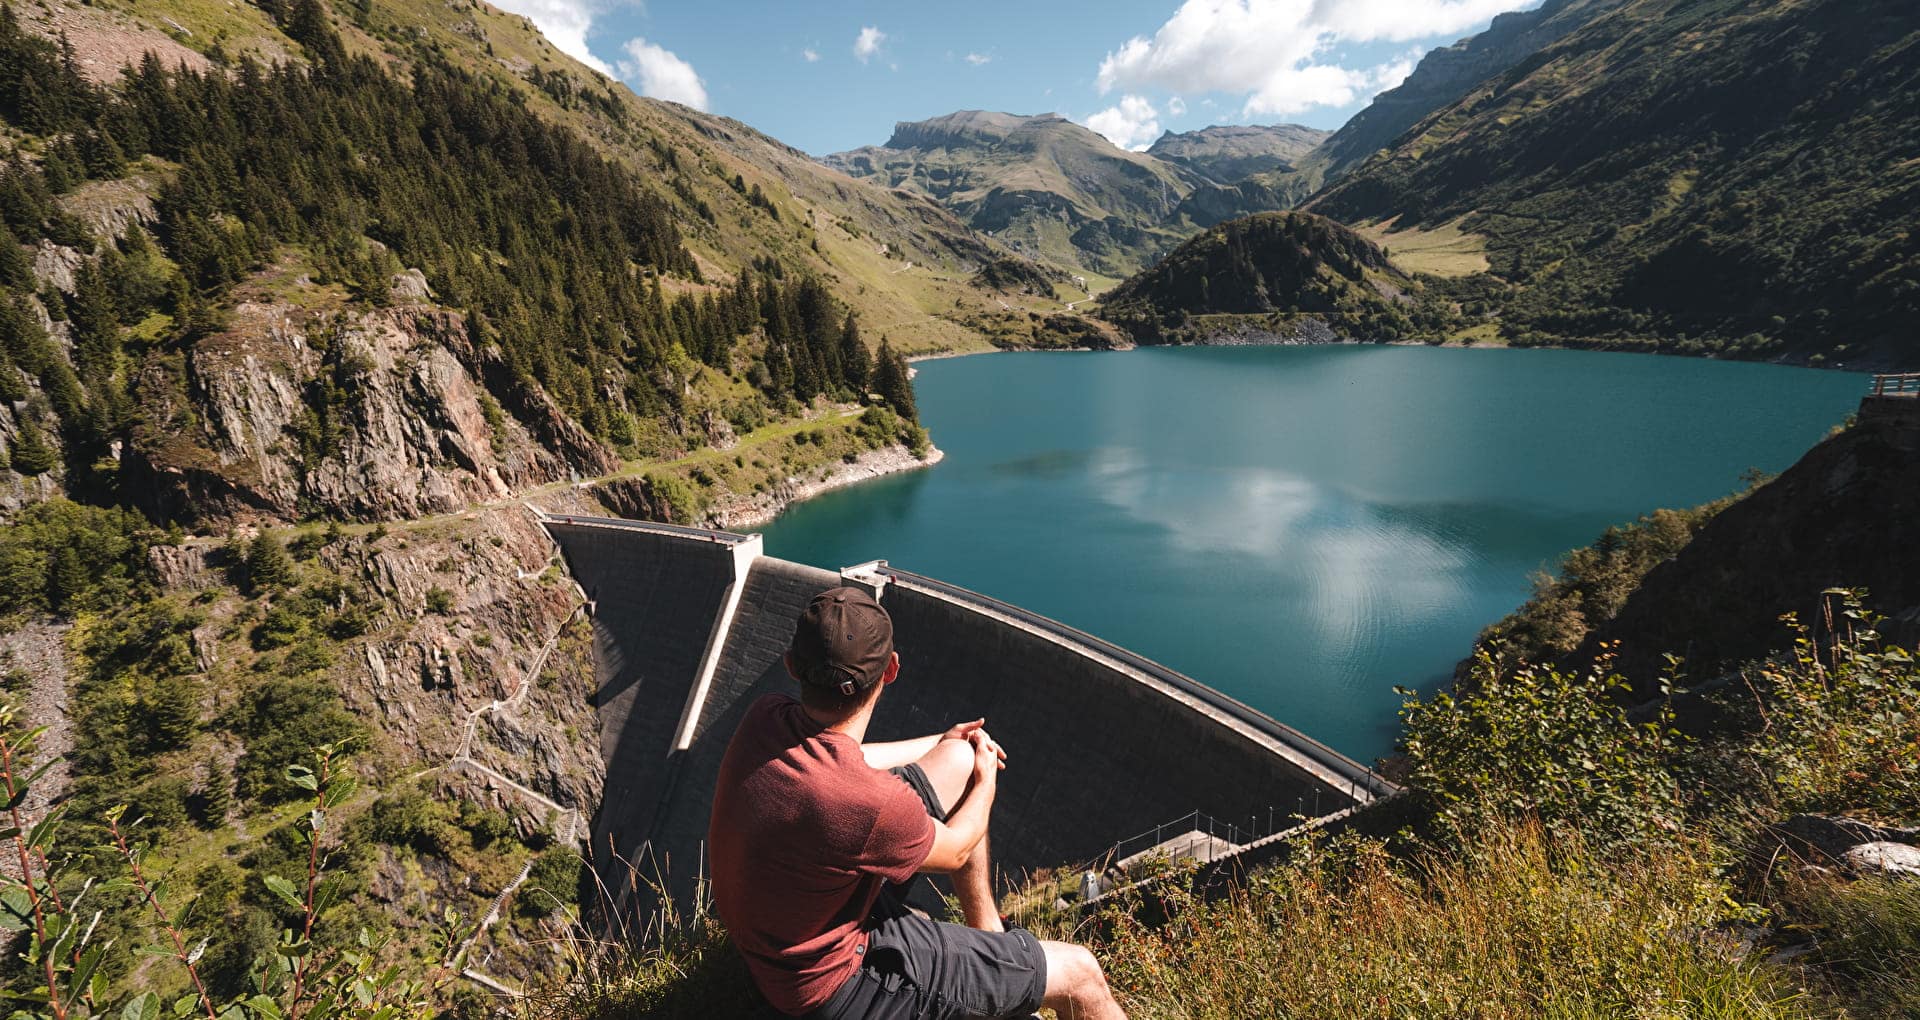 Découvrez pour vos évènements professionnels en Savoie et Haute-Savoie, l'Agence Savoie Mont-Blanc vous accompagne sur votre projet d'évènement professionnel éco-responsable et vous met en relation avec l'offre du territoire.